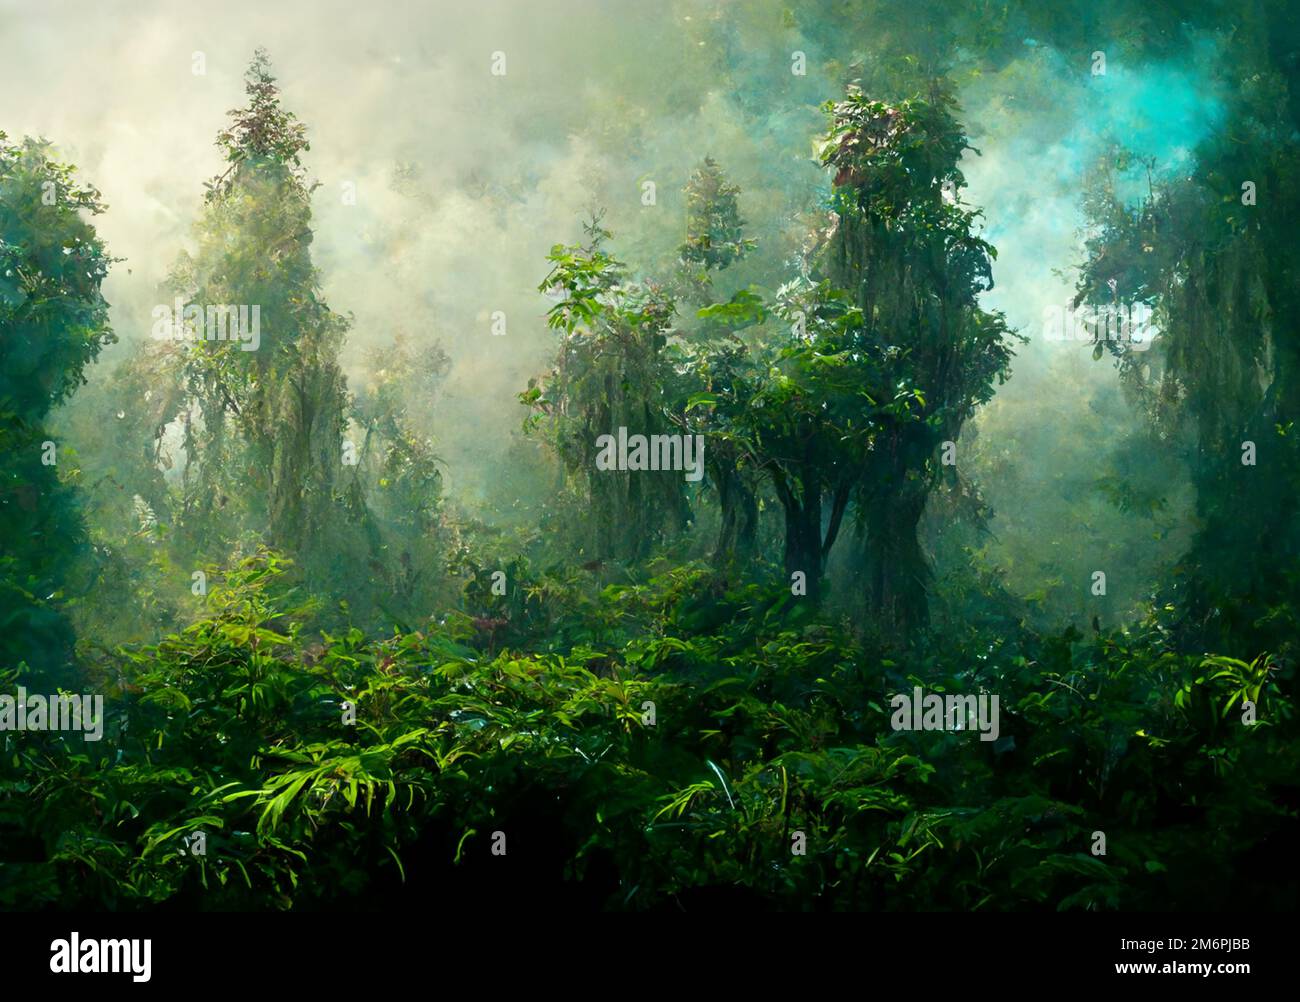 Forêt de contes de fées vert foncé avec lumières éthérées art numérique Banque D'Images